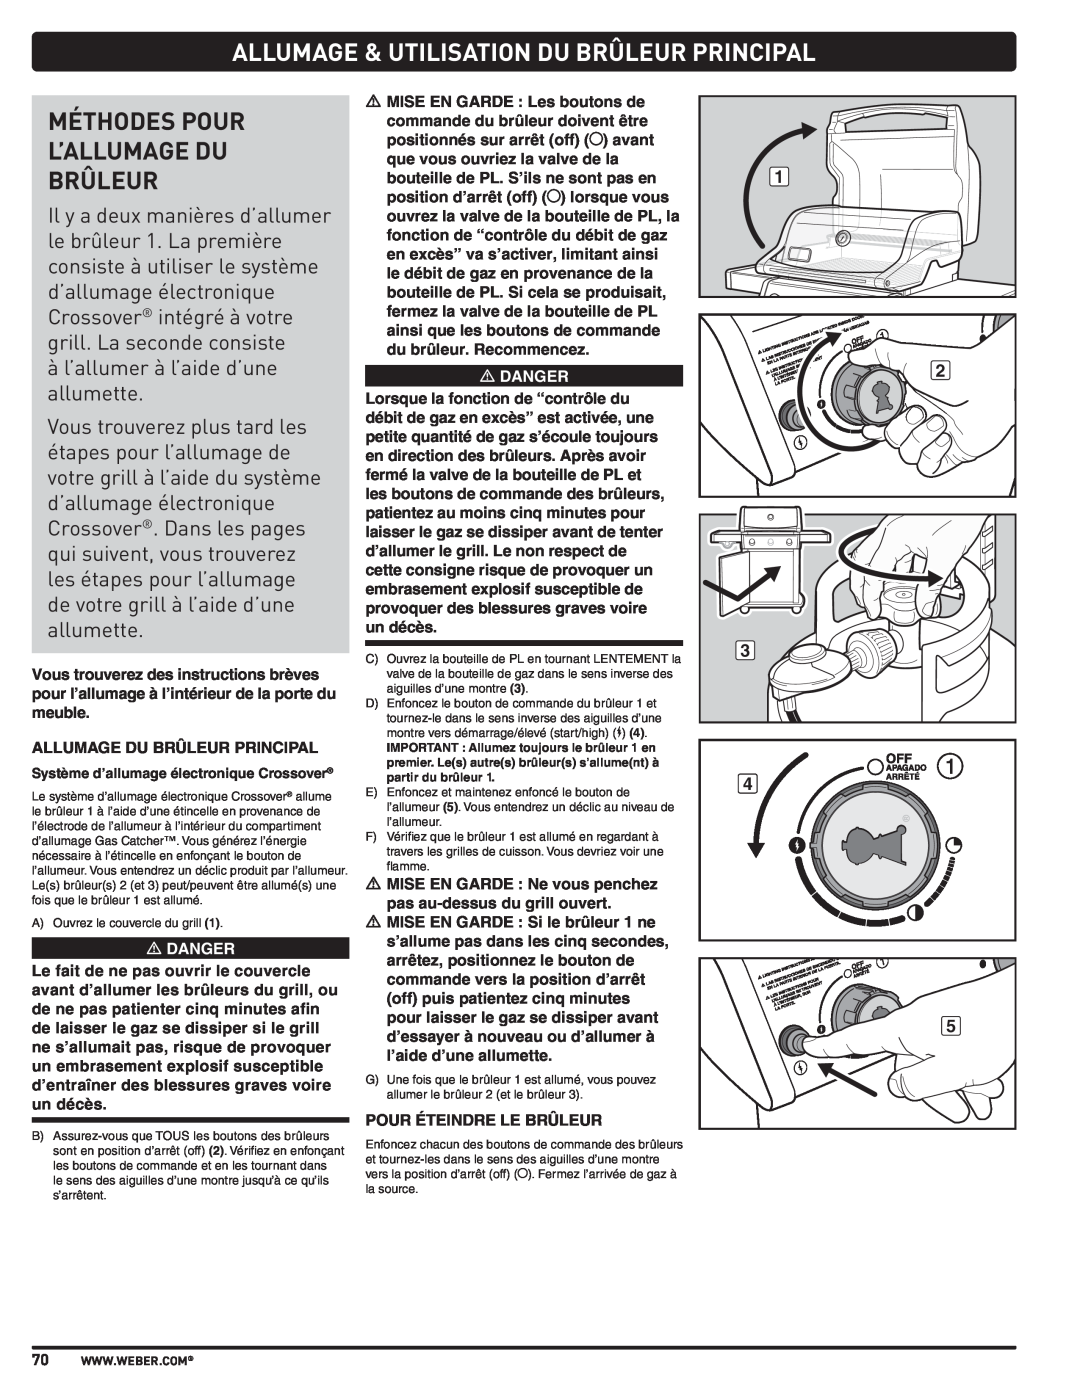 Weber PL - PG. 59 57205 manual Allumage & Utilisation Du Brûleur Principal, Méthodes Pour L’Allumage Du Brûleur 